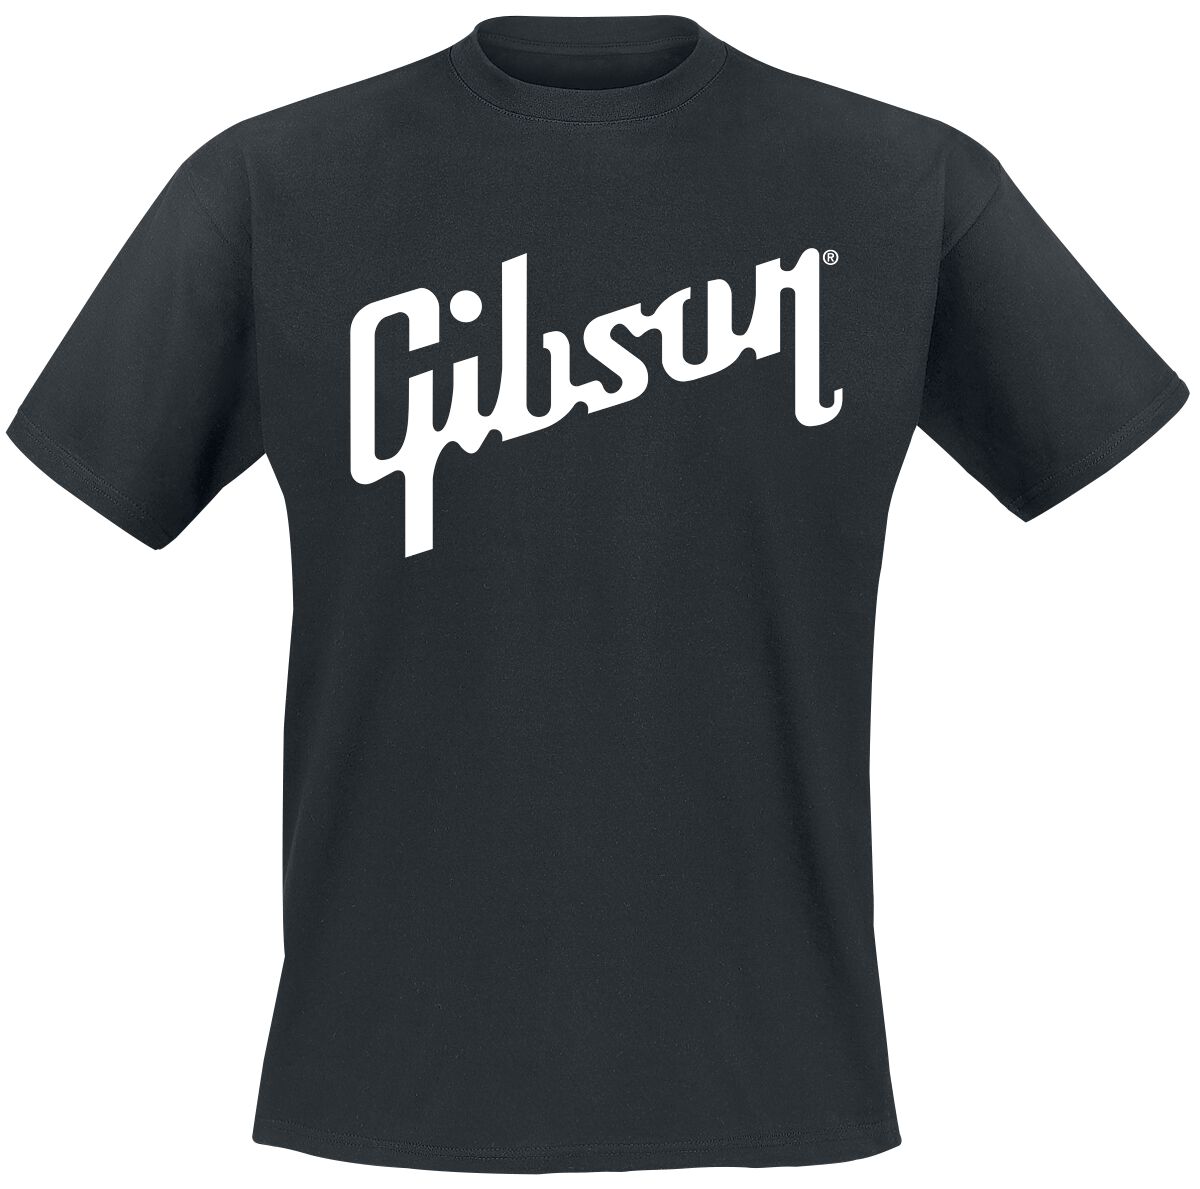 T-Shirt Manches courtes de Gibson - Logo Blanc - M à XL - pour Homme - noir